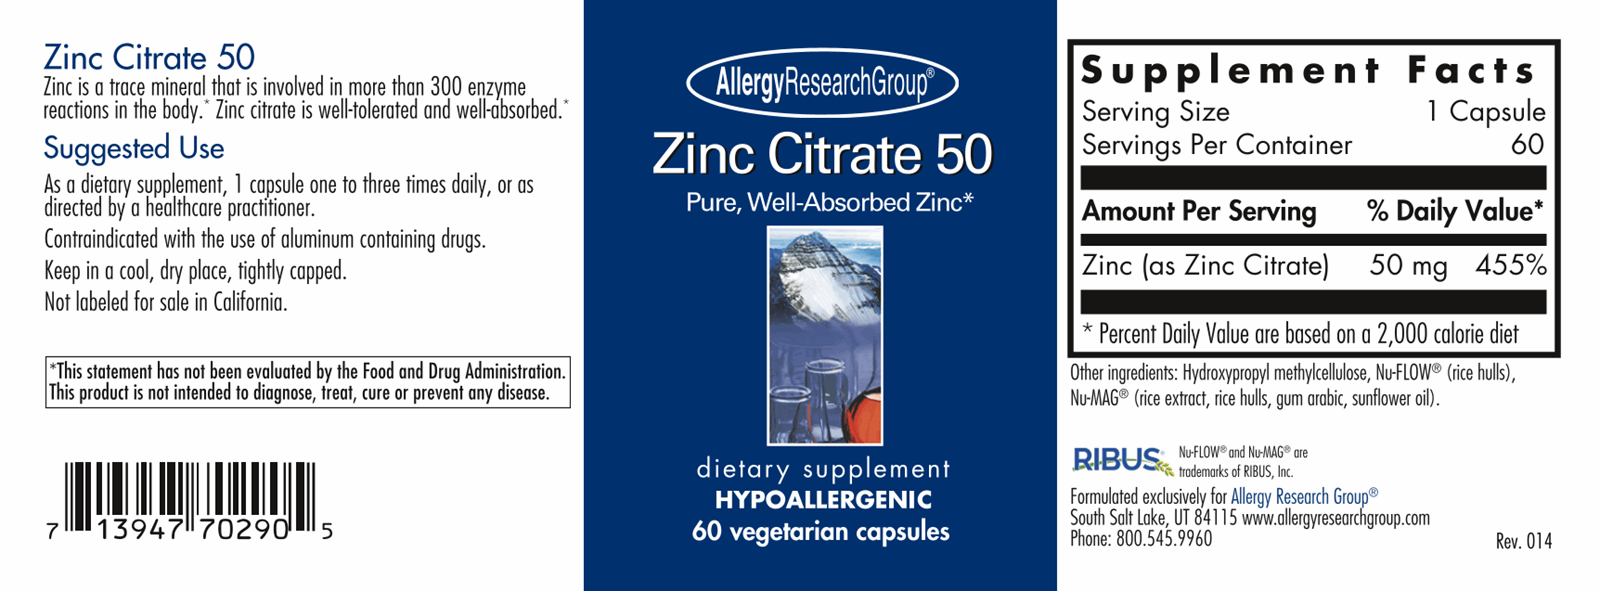 Zinc Citrate 50 